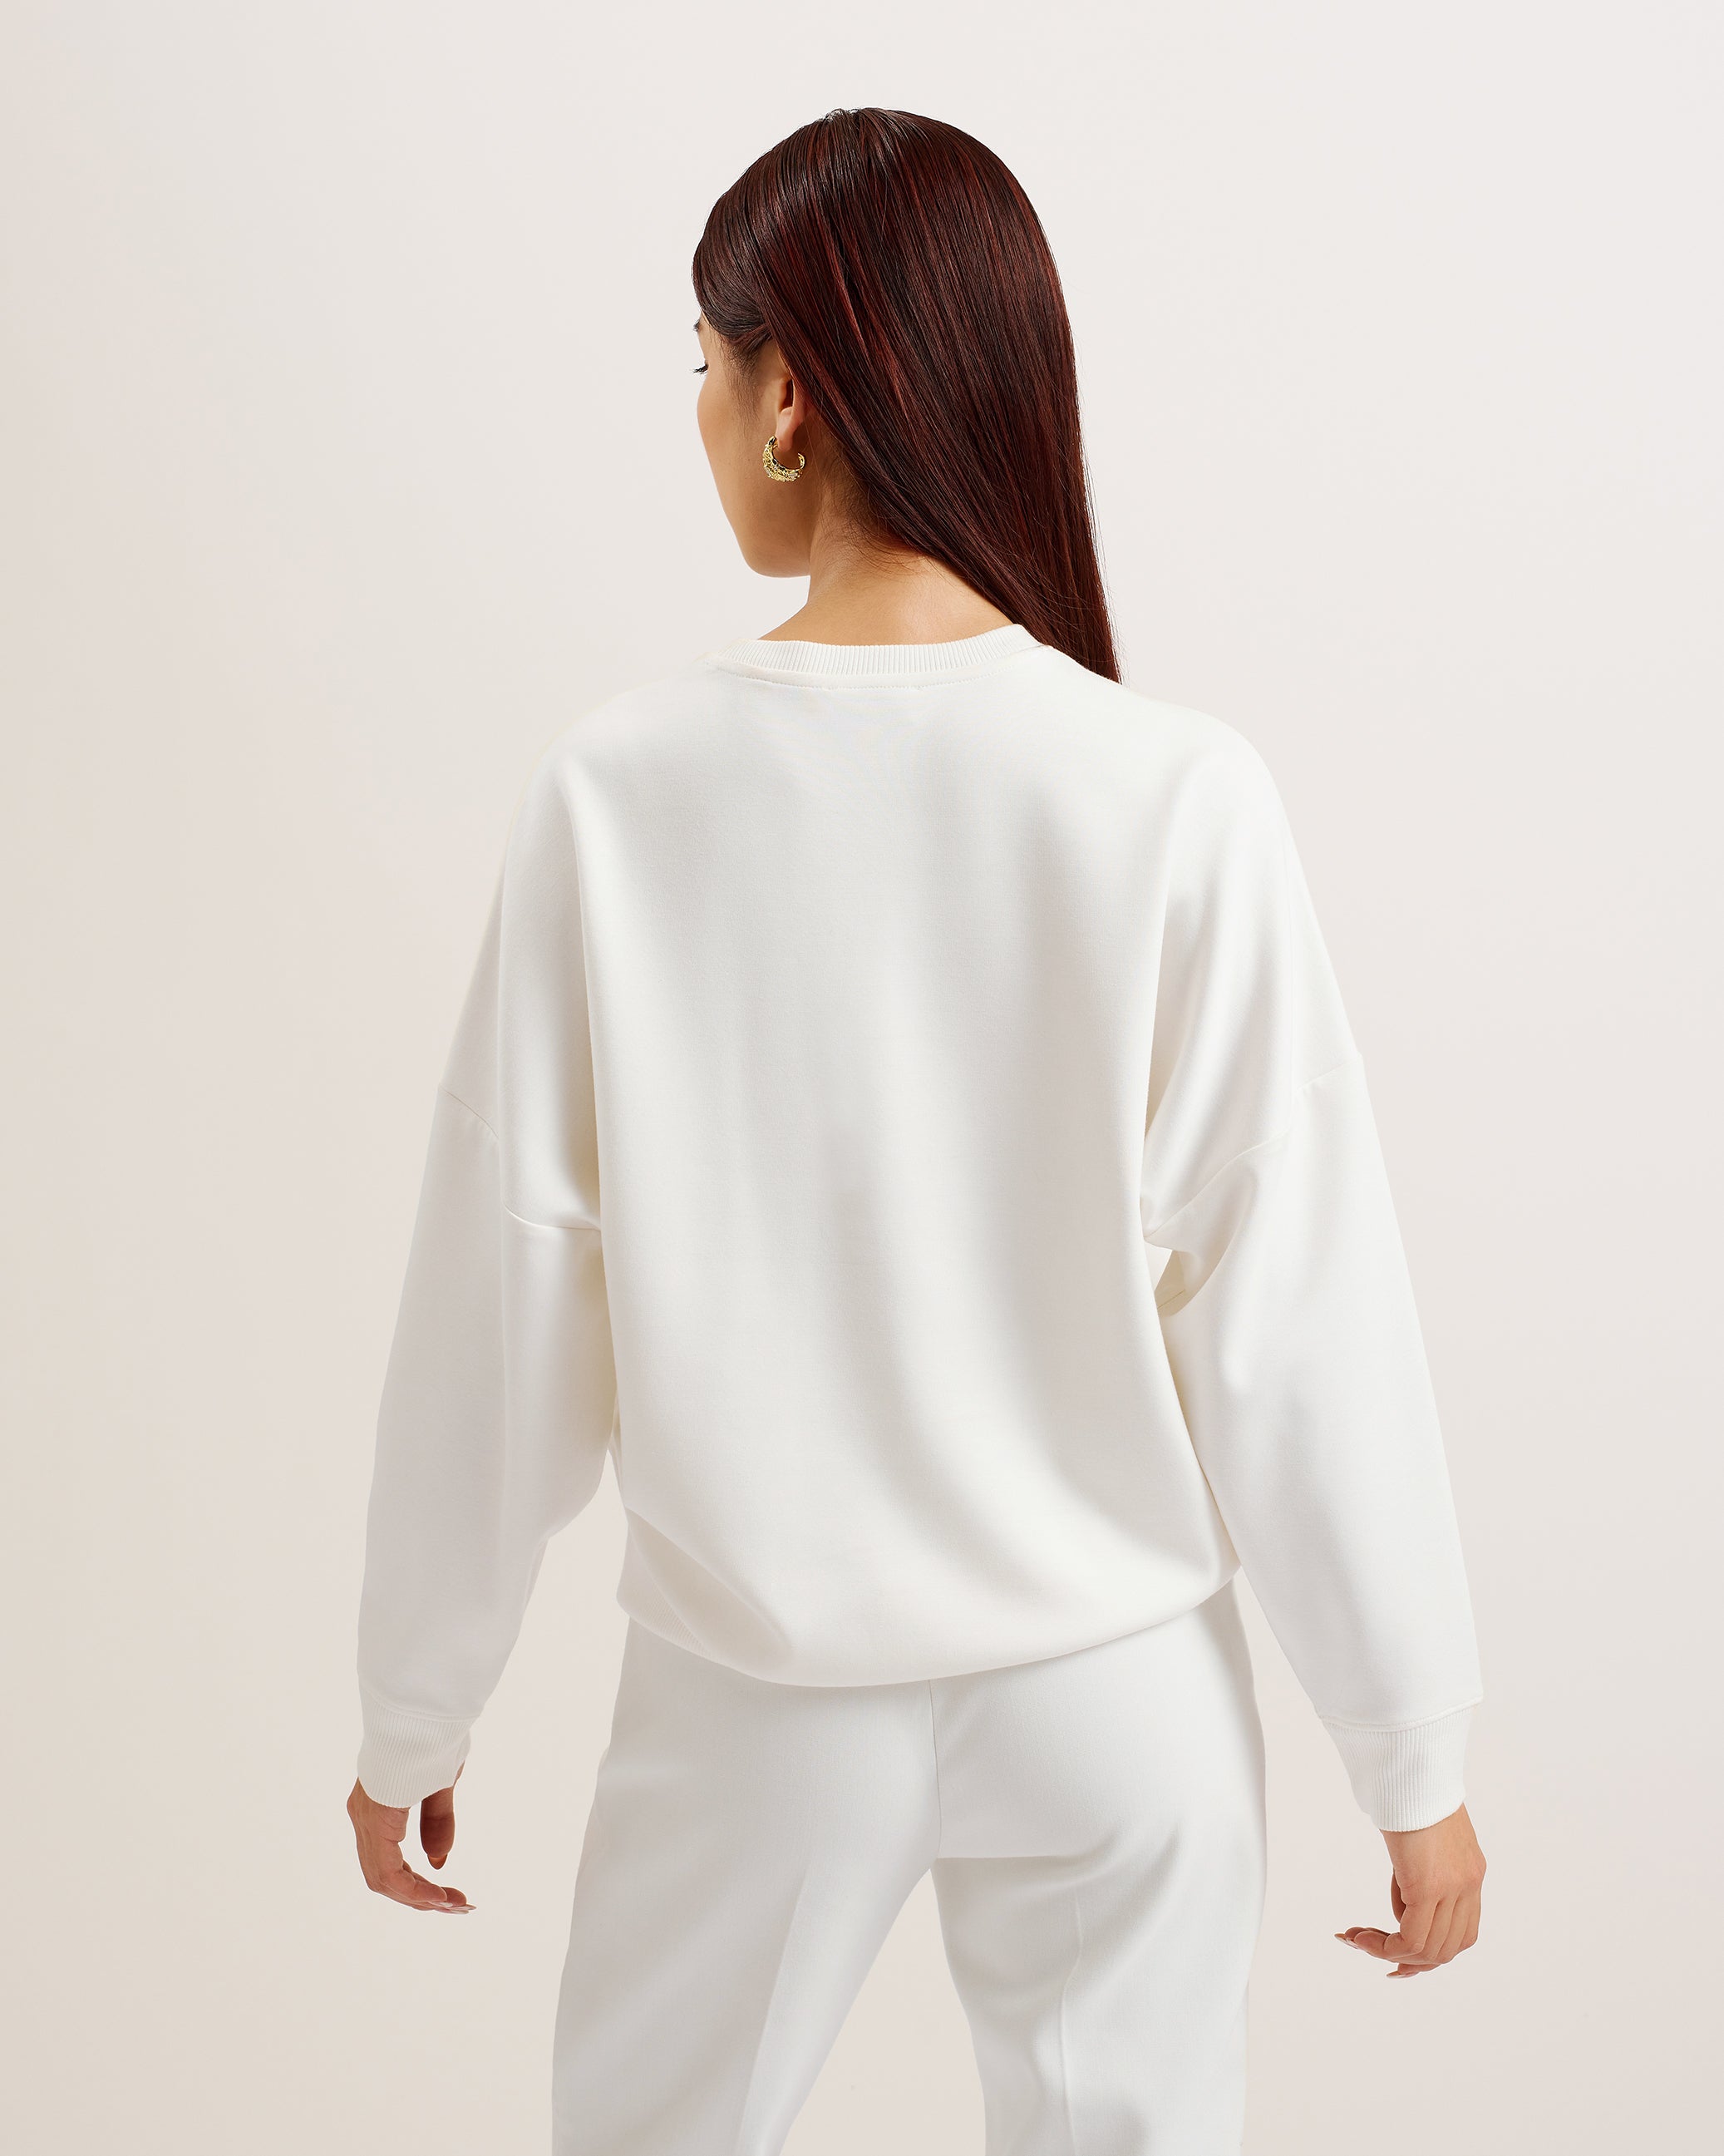 Bayleyy Sequin Graphic Embellished Sweatshirt White